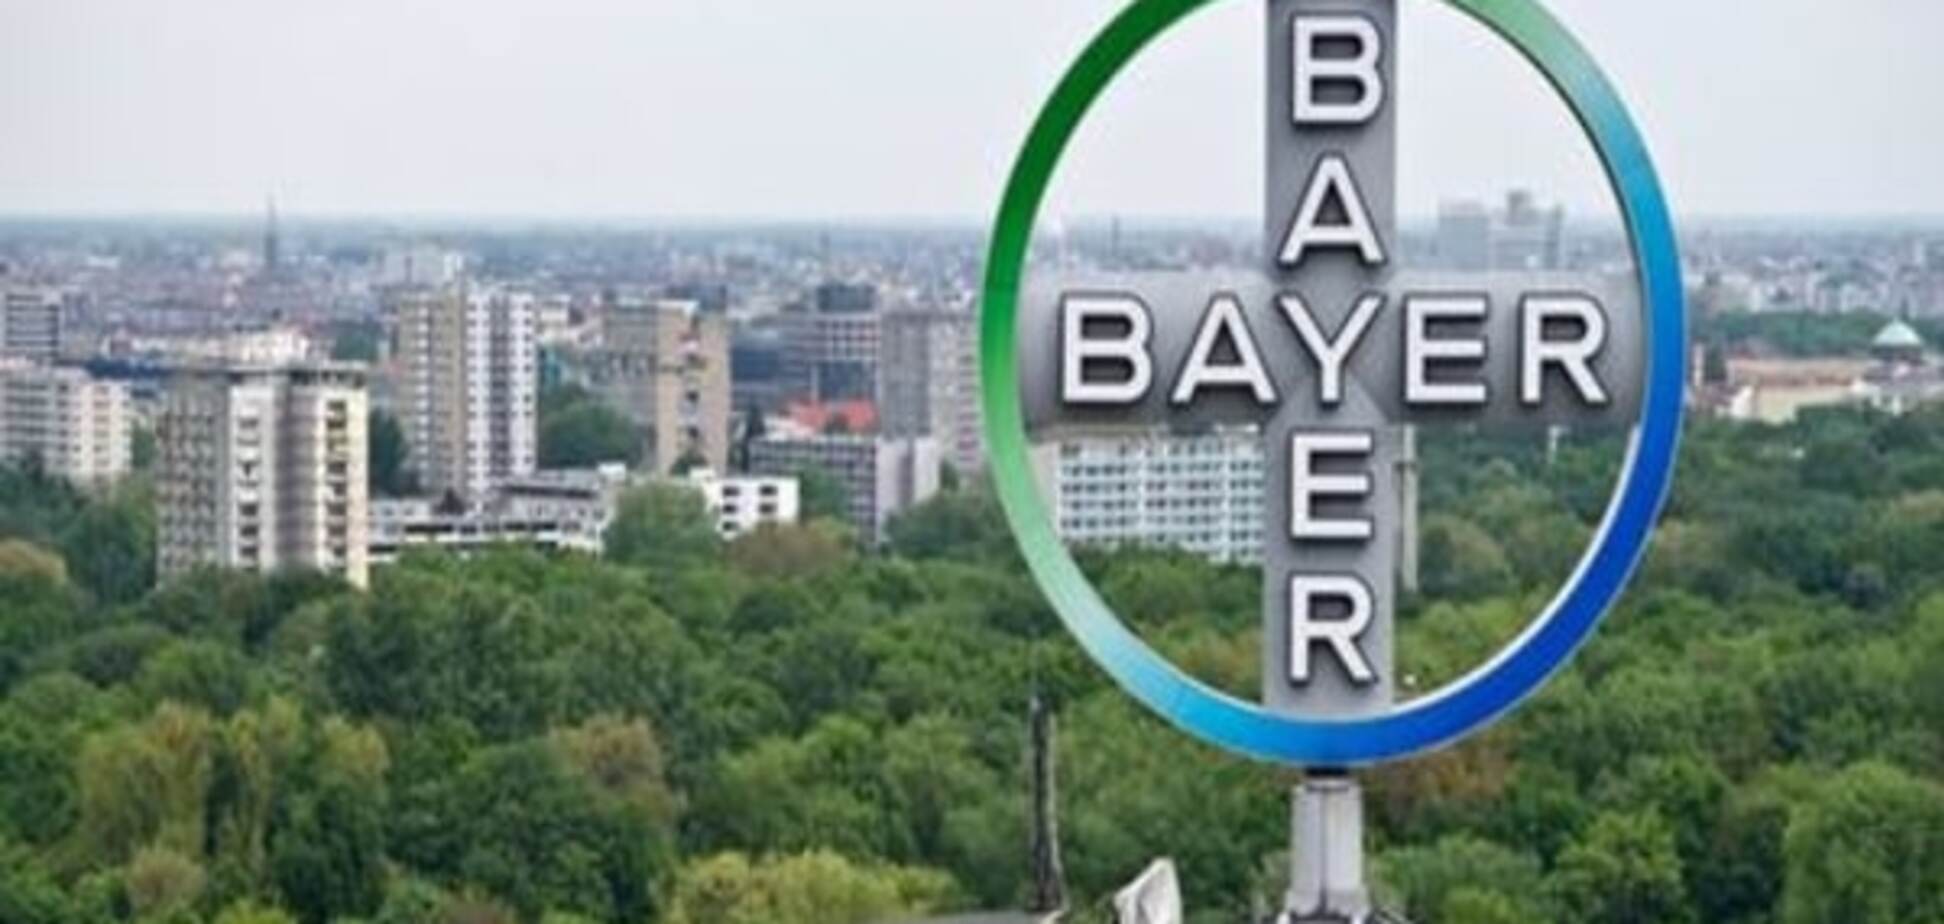 Німецький концерн Bayer купує американську корпорацію Monsanto за рекордну суму